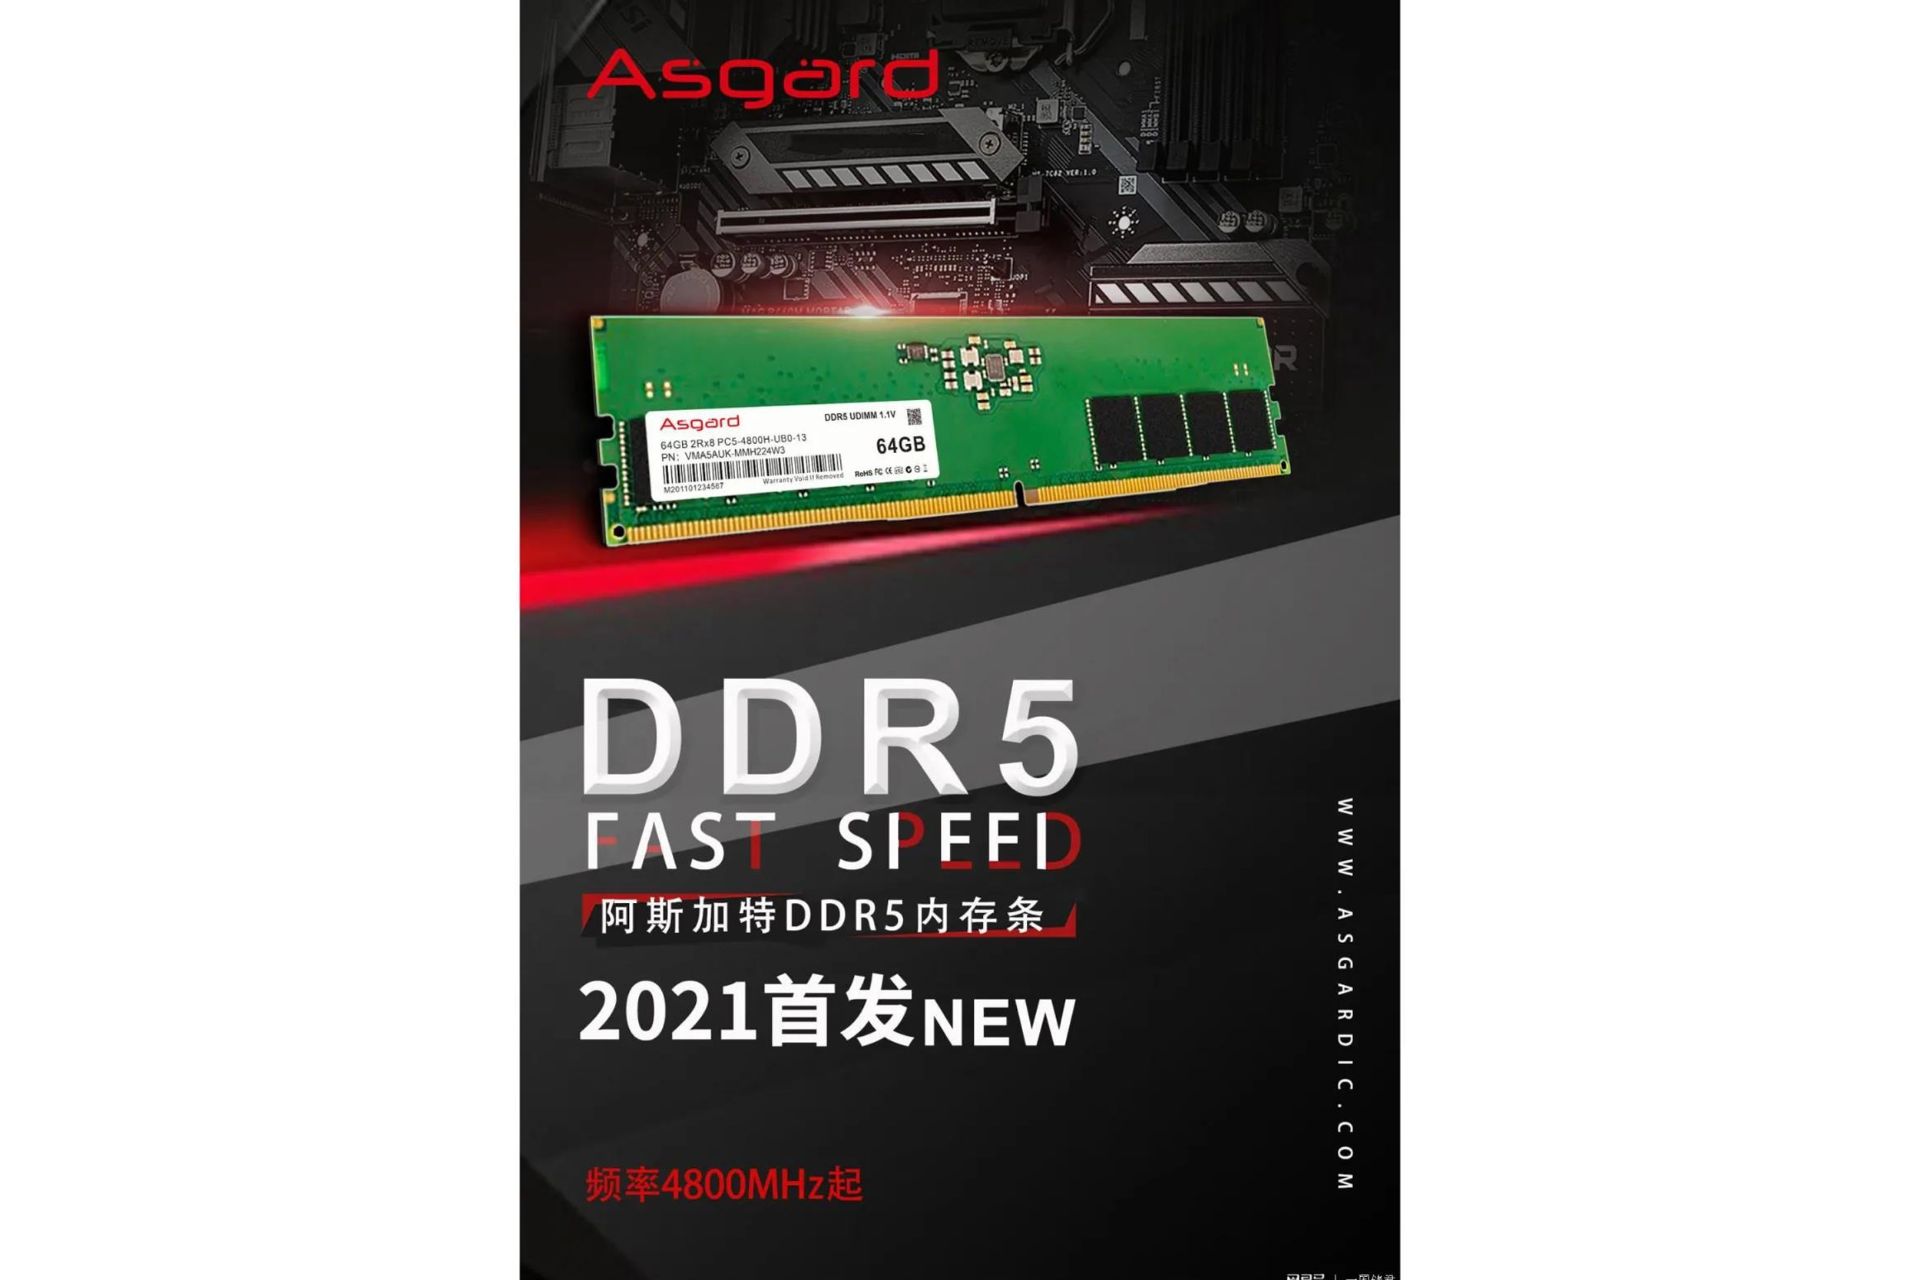 مرجع متخصصين ايران پوستر ماژول حافظه DDR5 شركت Asgard